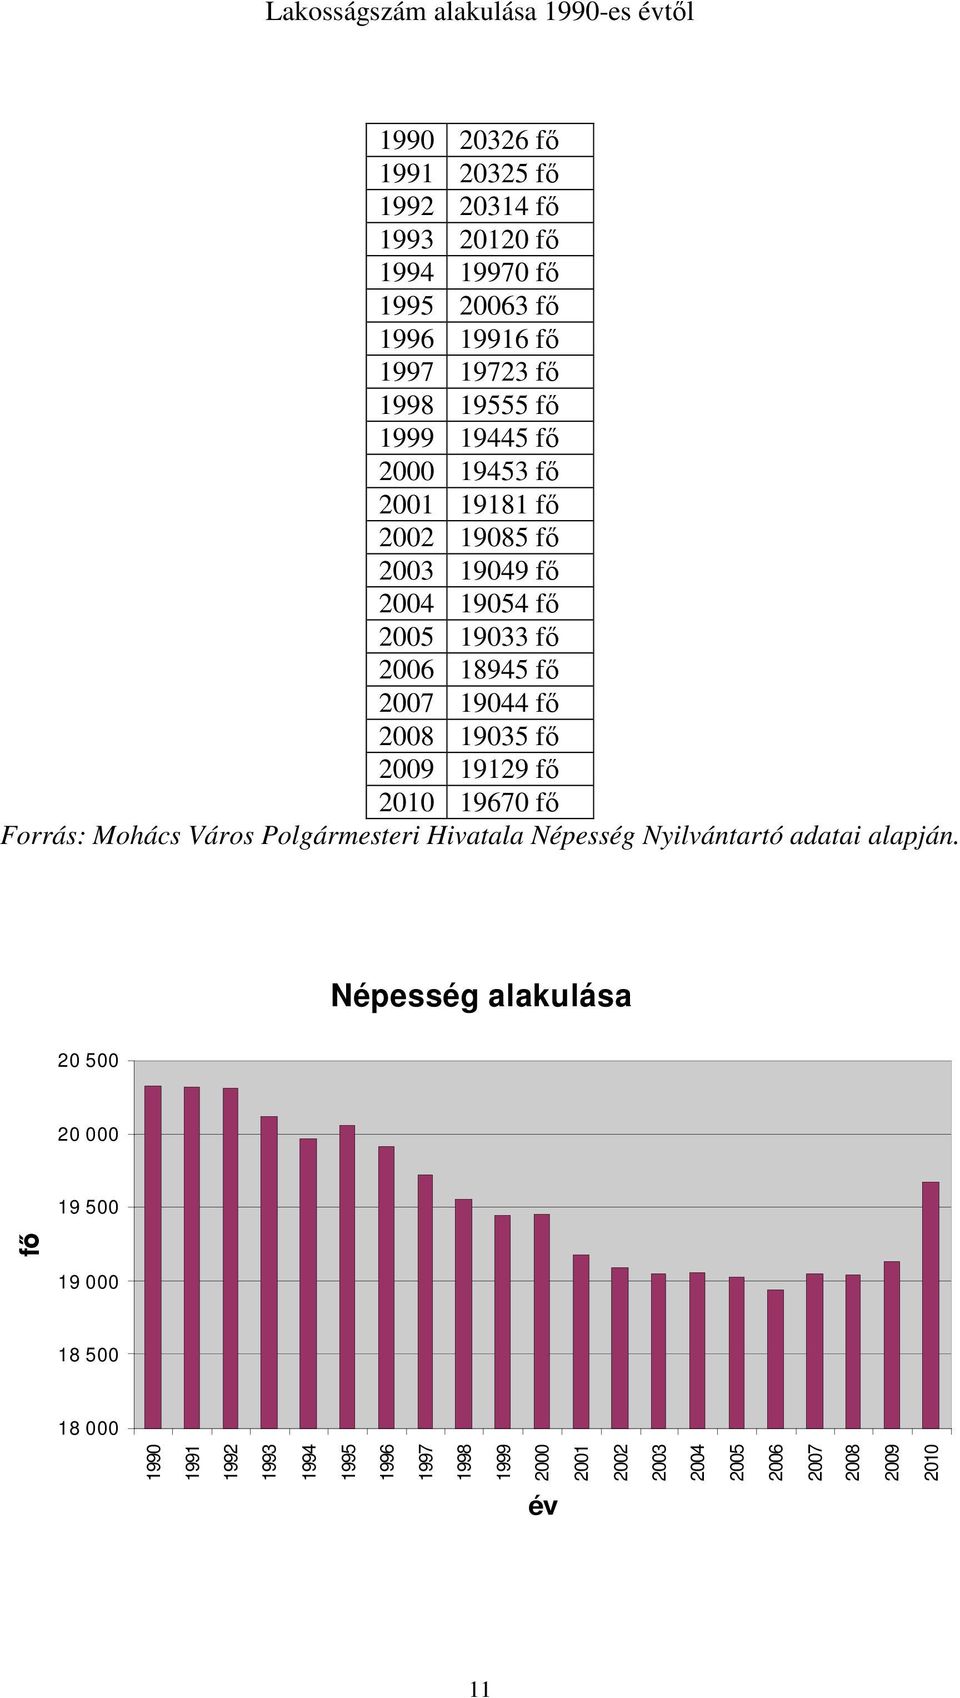 2008 19035 fő 2009 19129 fő 2010 19670 fő Forrás: Mohács Város Polgármesteri Hivatala Népesség Nyilvántartó adatai alapján.